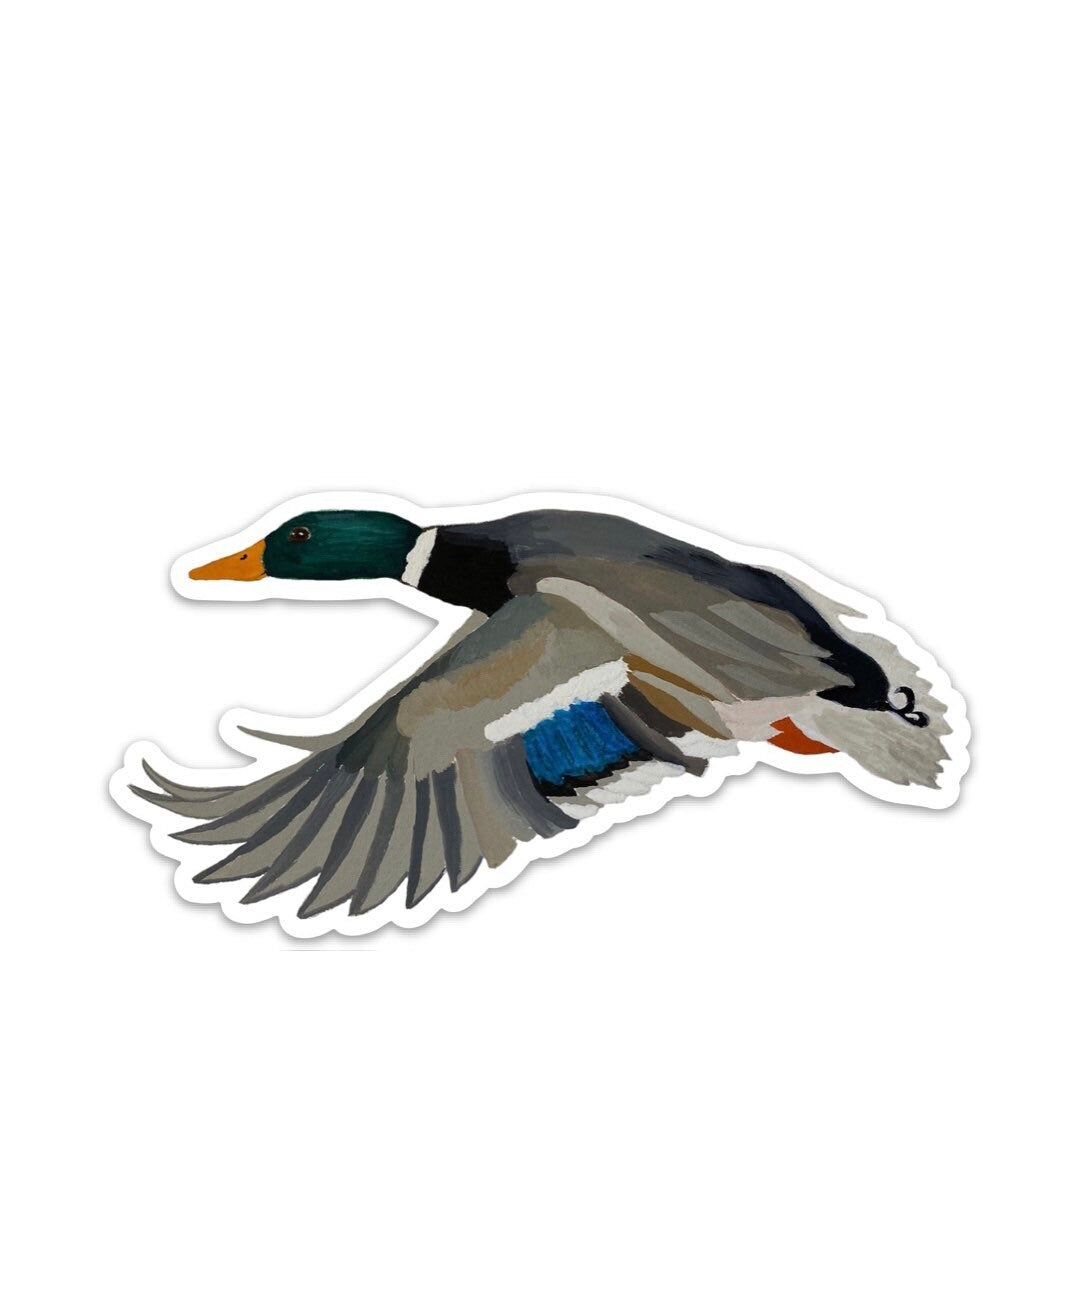 Mallard Drake Duck 5" Die Cut Vinyl Sticker Decal: Durable Matte-Finish